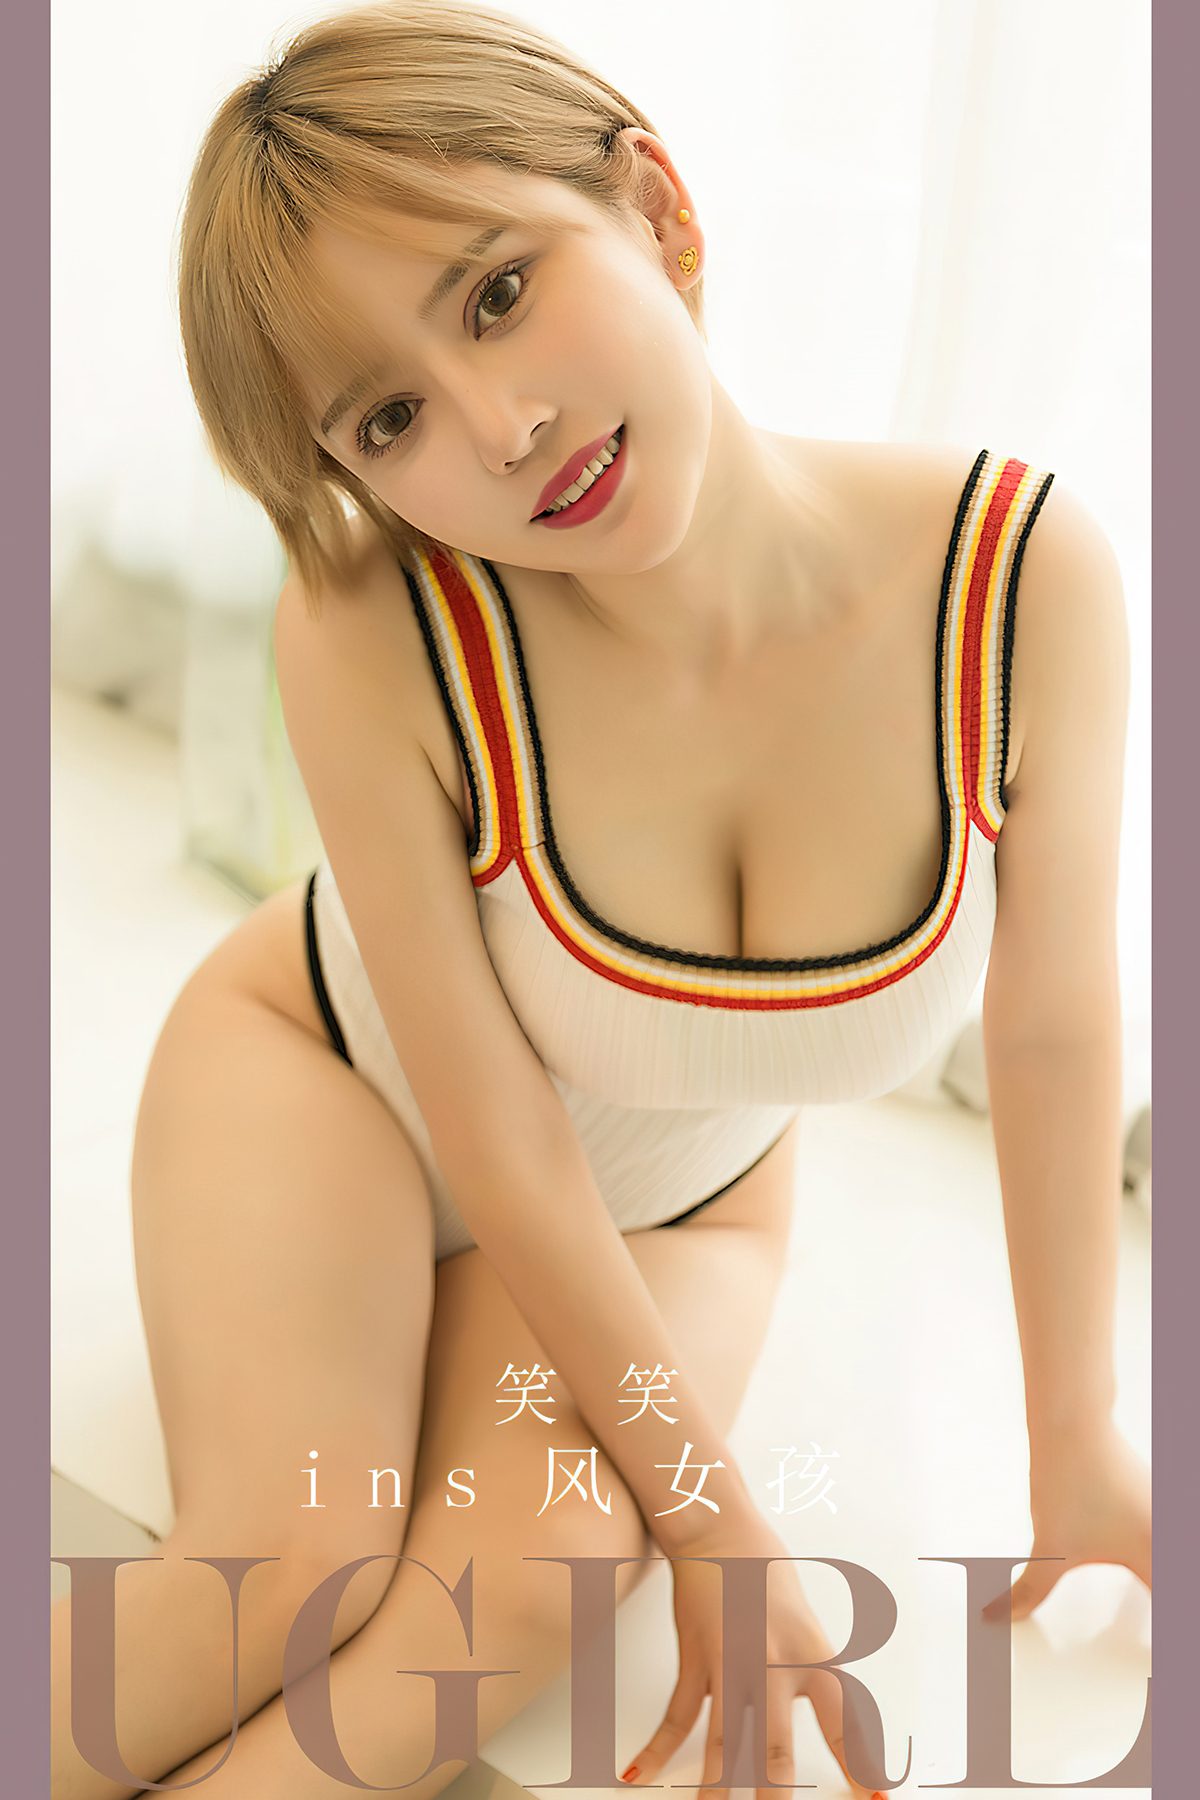 Ugirls App尤果圈 No 2700 Xiao Xiao 0007 1477926904.jpg